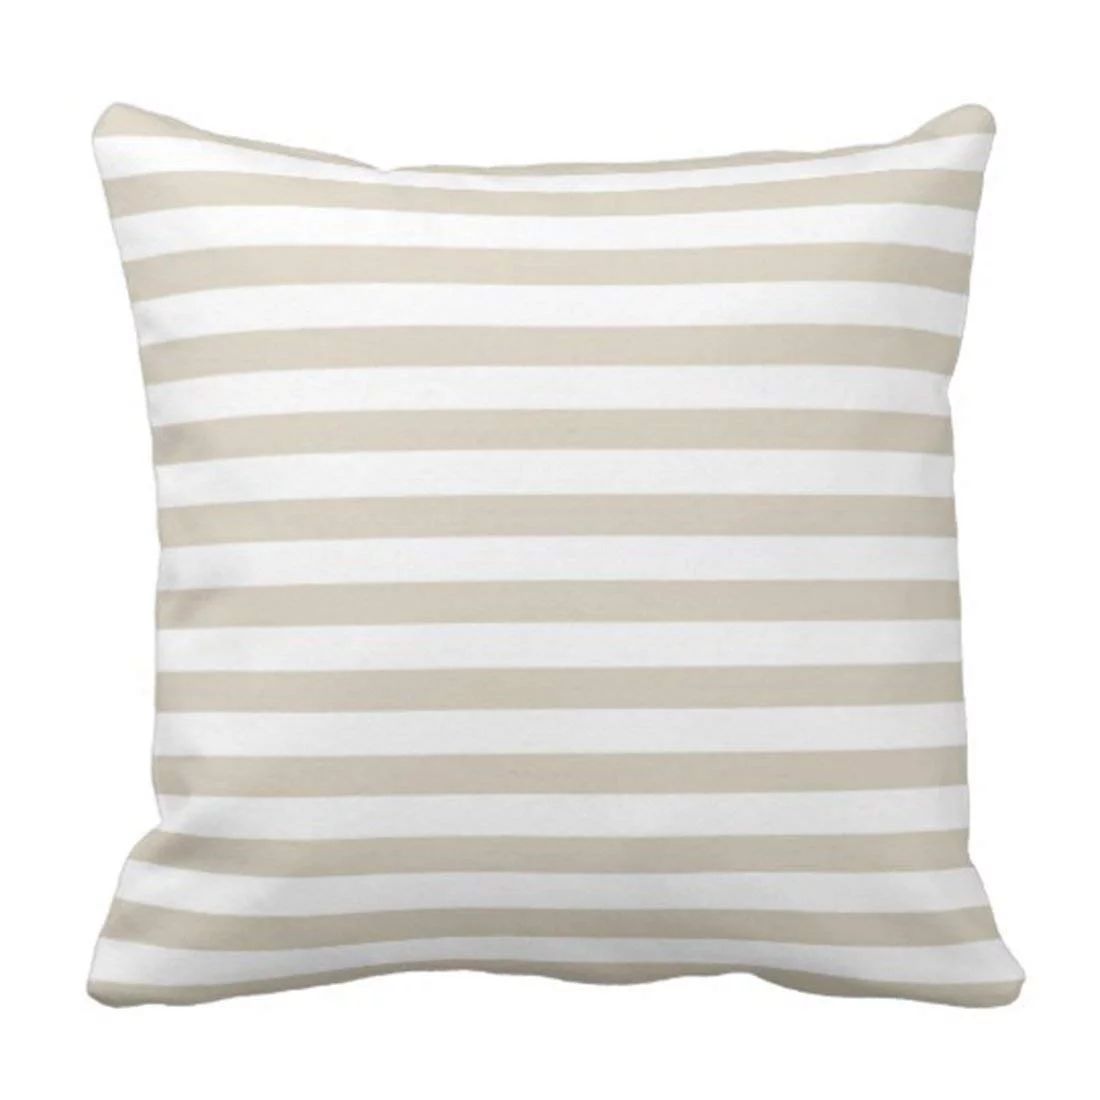 WOPOP Modern Tan Beige White Stripes Pillowcase Throw Pillow Cover 18x18 inches | Walmart (US)